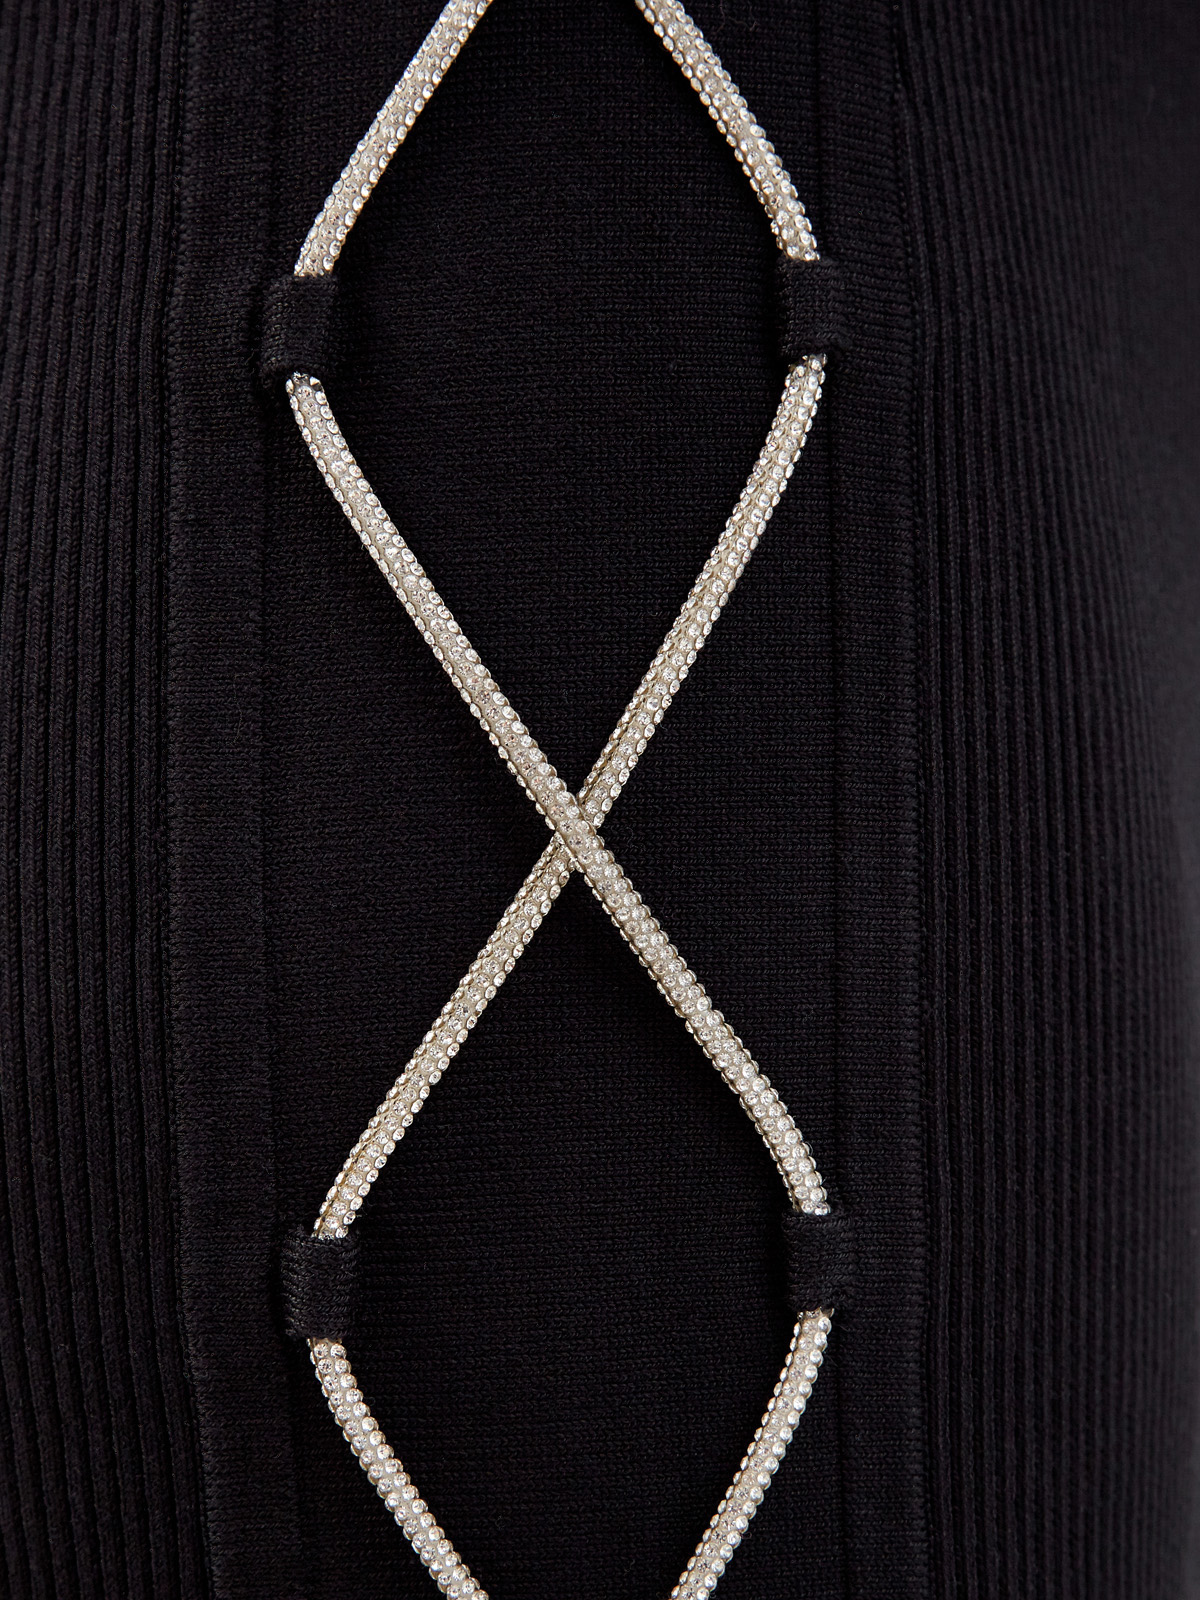 Юбка облегающего силуэта с цепочками из кристаллов GIUSEPPE DI MORABITO, цвет черный, размер 40 - фото 5